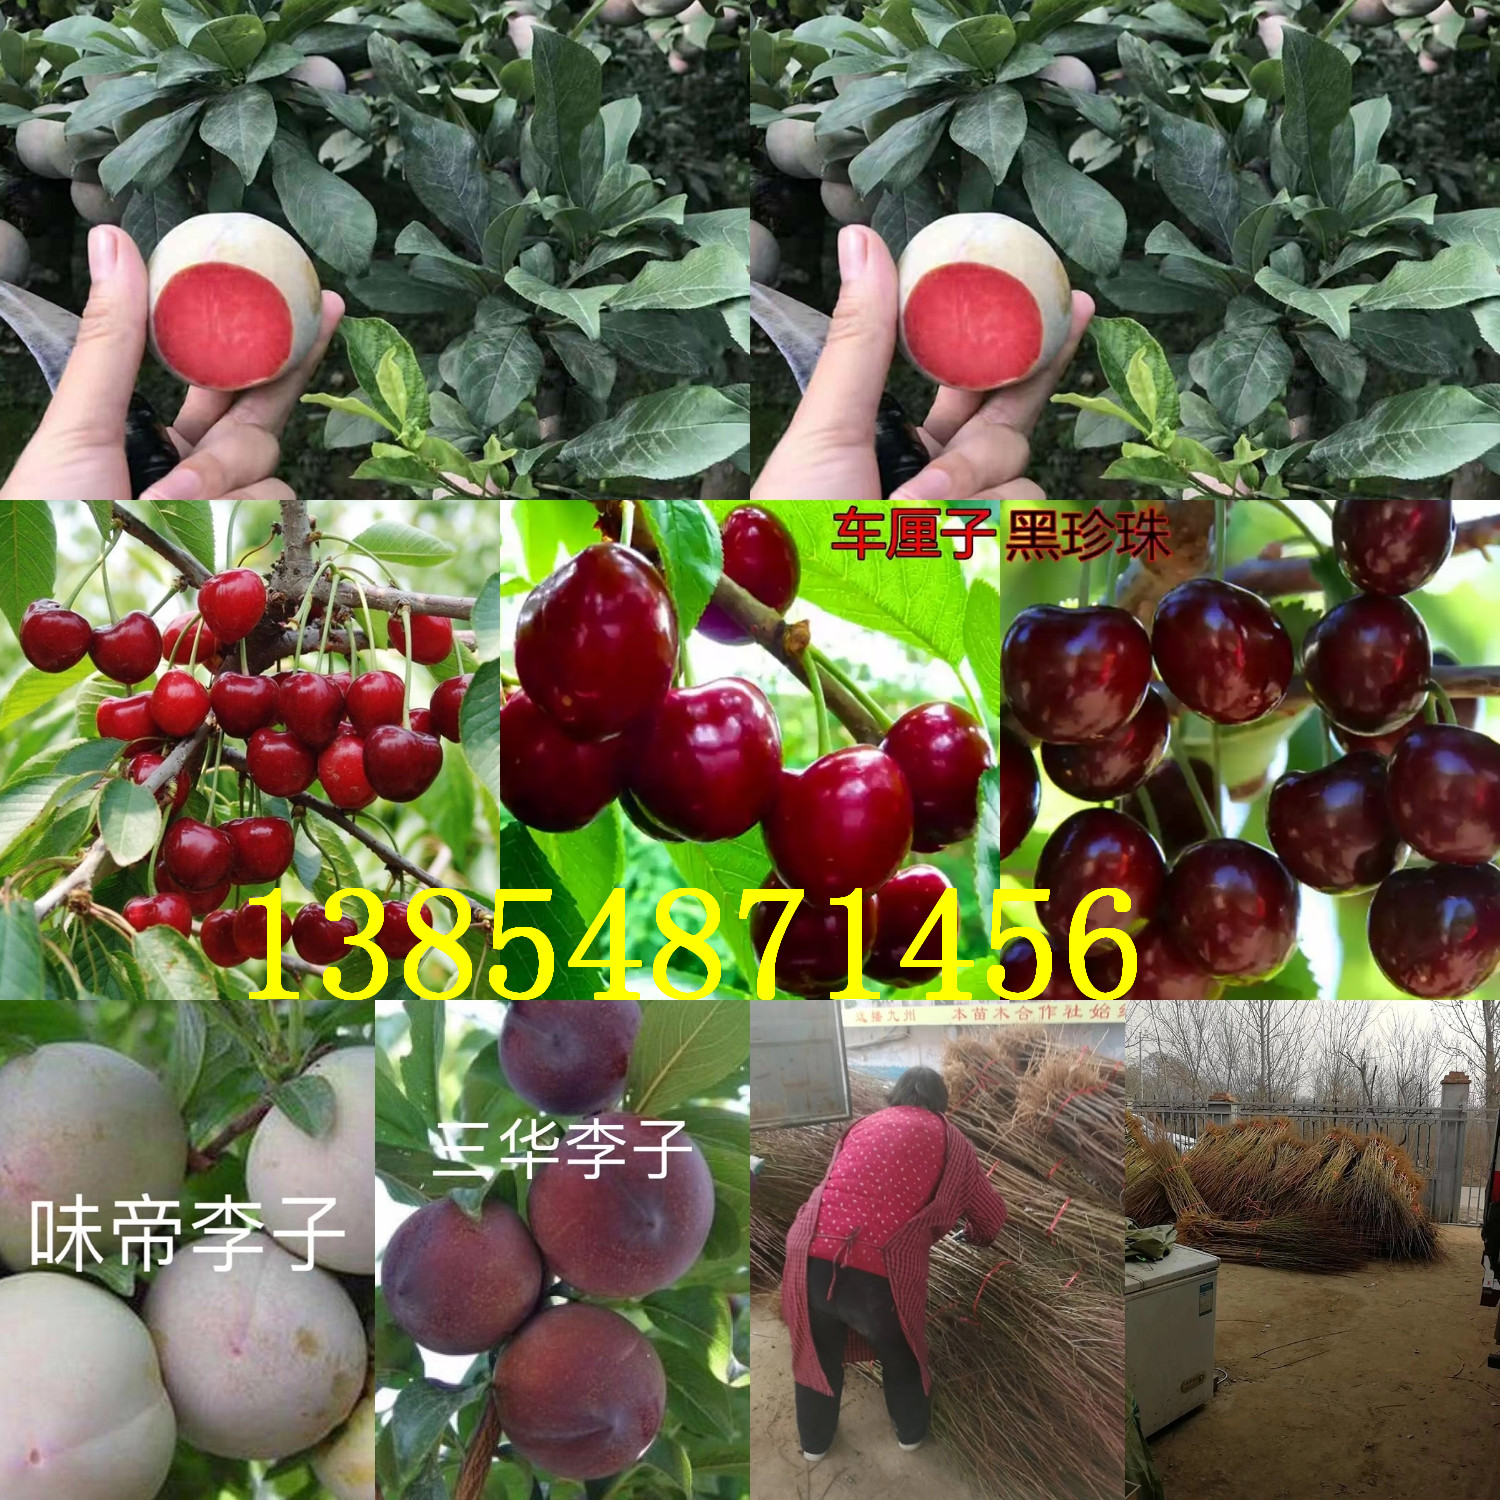 山东青岛花椒树苗基地卖啥价格、果树苗哪里有售